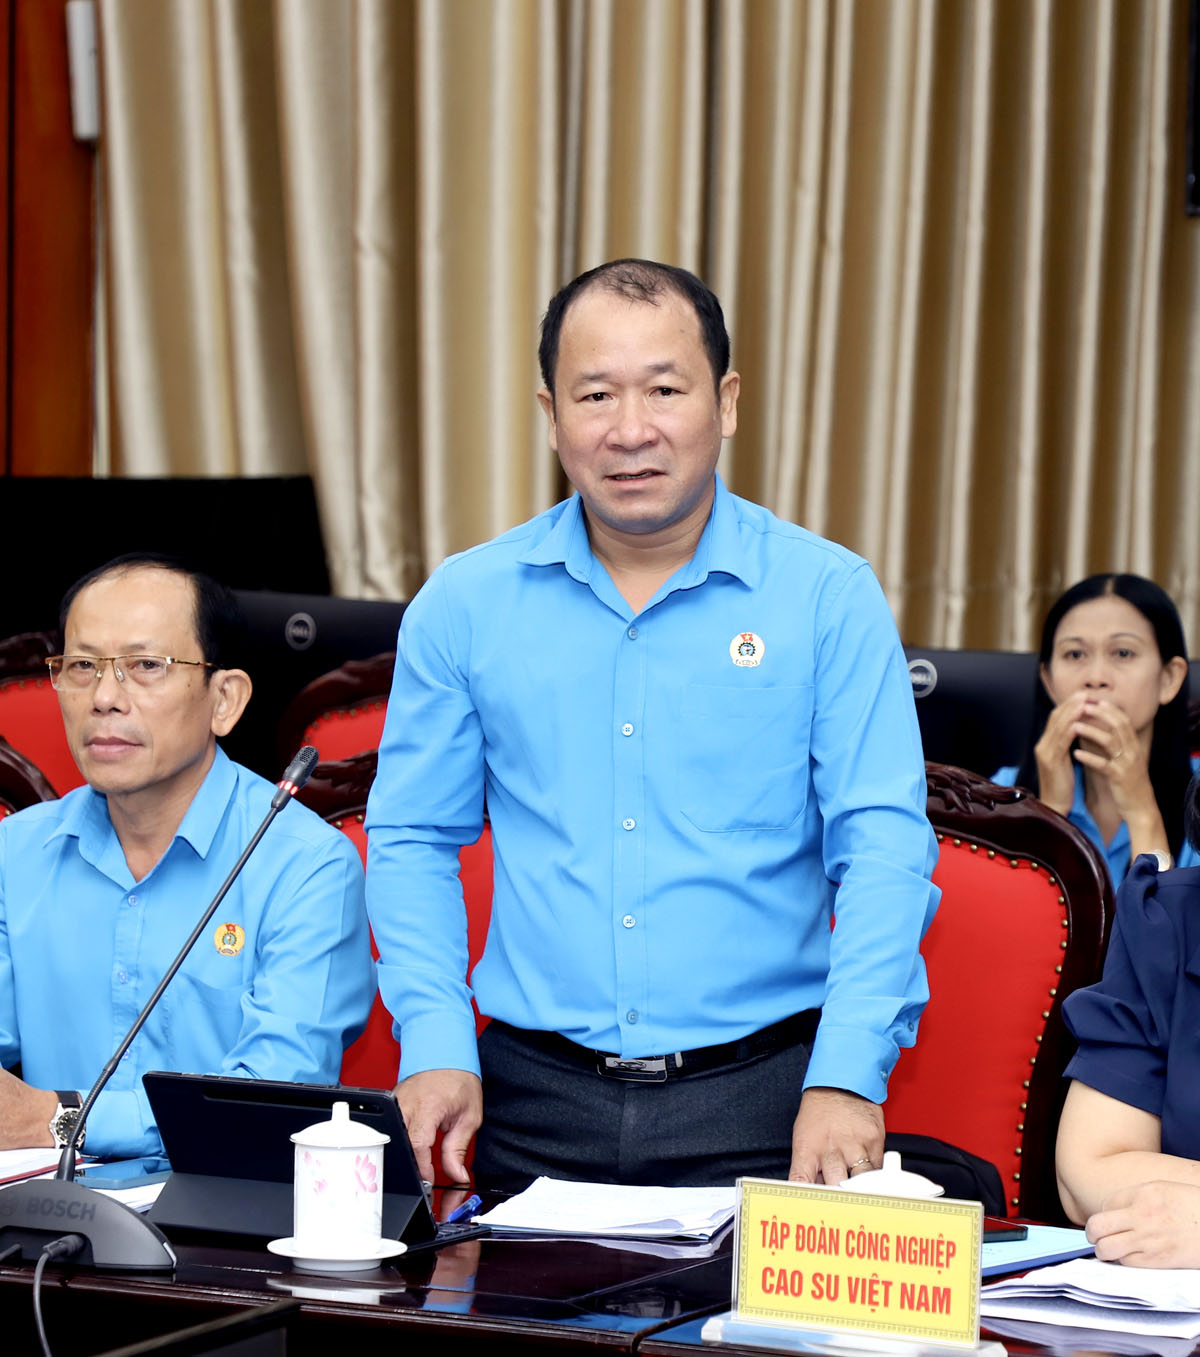 Phó Chủ tịch Công đoàn Cao su Việt Nam Nguyễn Ngọc Mùi thông tin về các chính sách đãi ngộ người lao động của Tập đoàn và ngành cao su Việt Nam